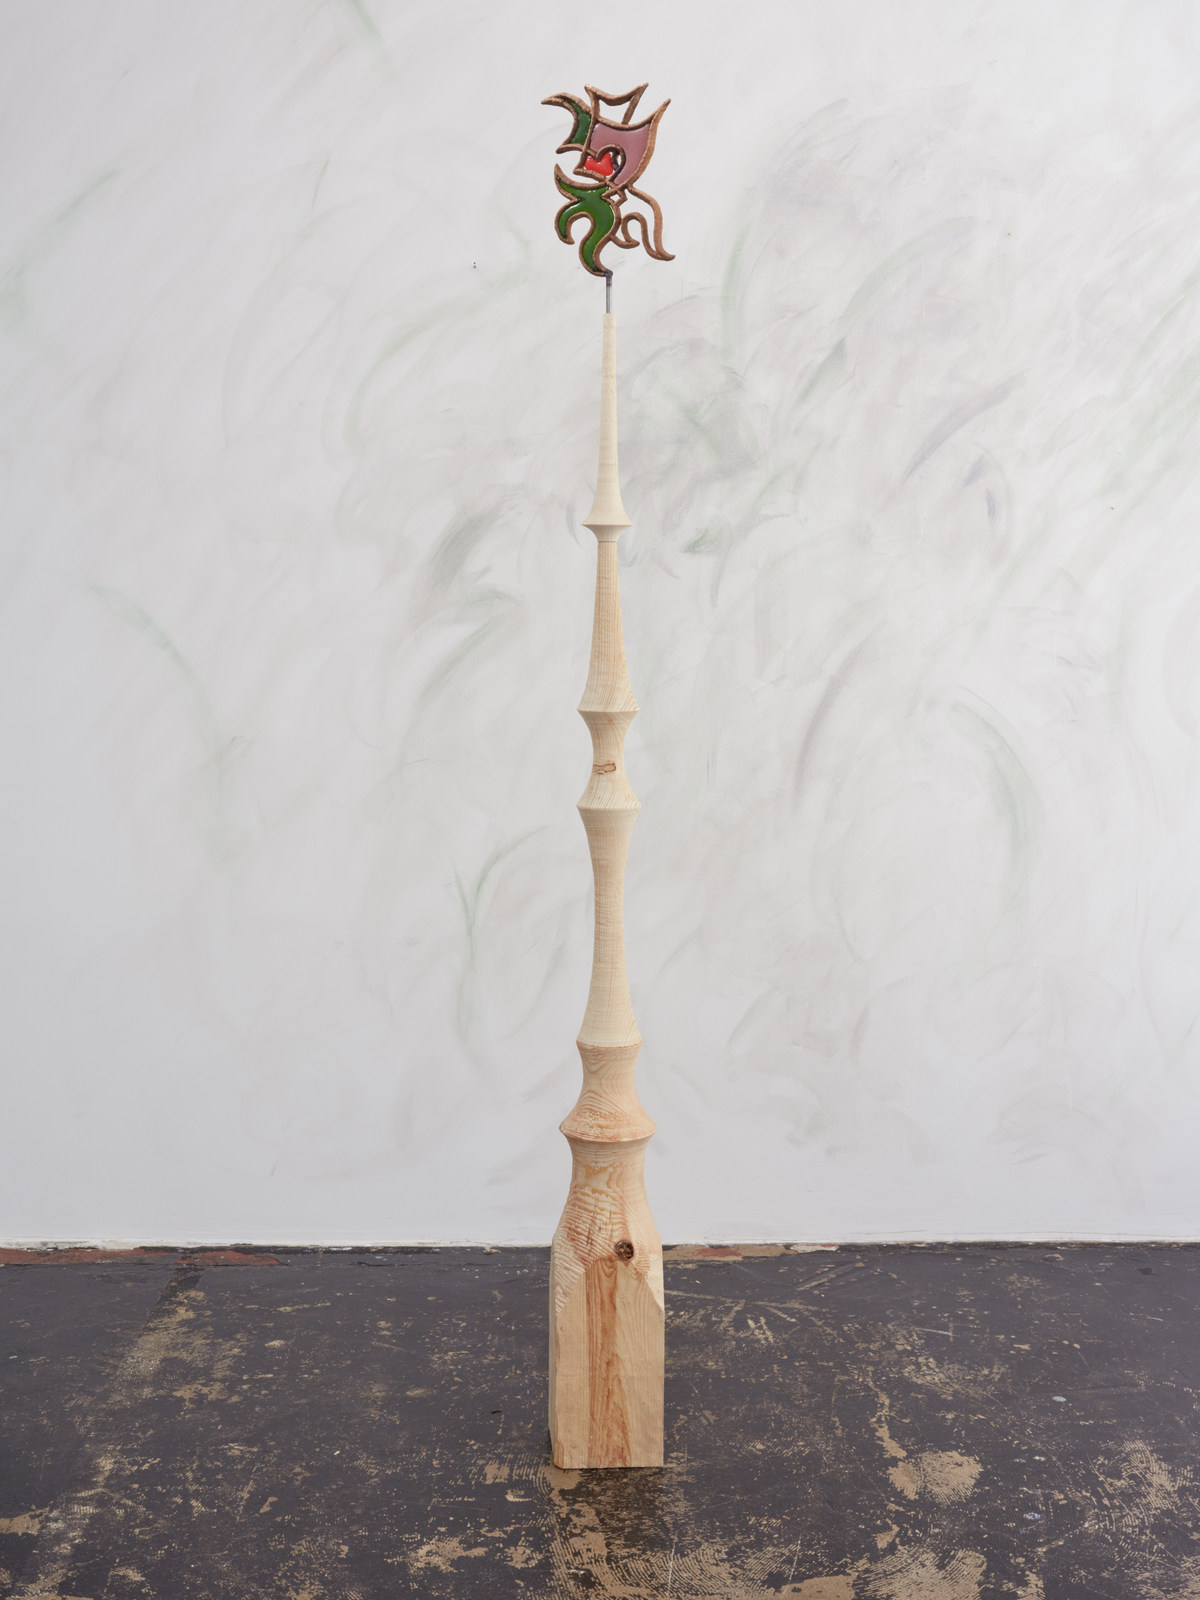 Emelie Sandström, Beast, 2016, Pinewood, bronze, glass, 74 x 7 x 6 in, 187 x 17 x 15 cm